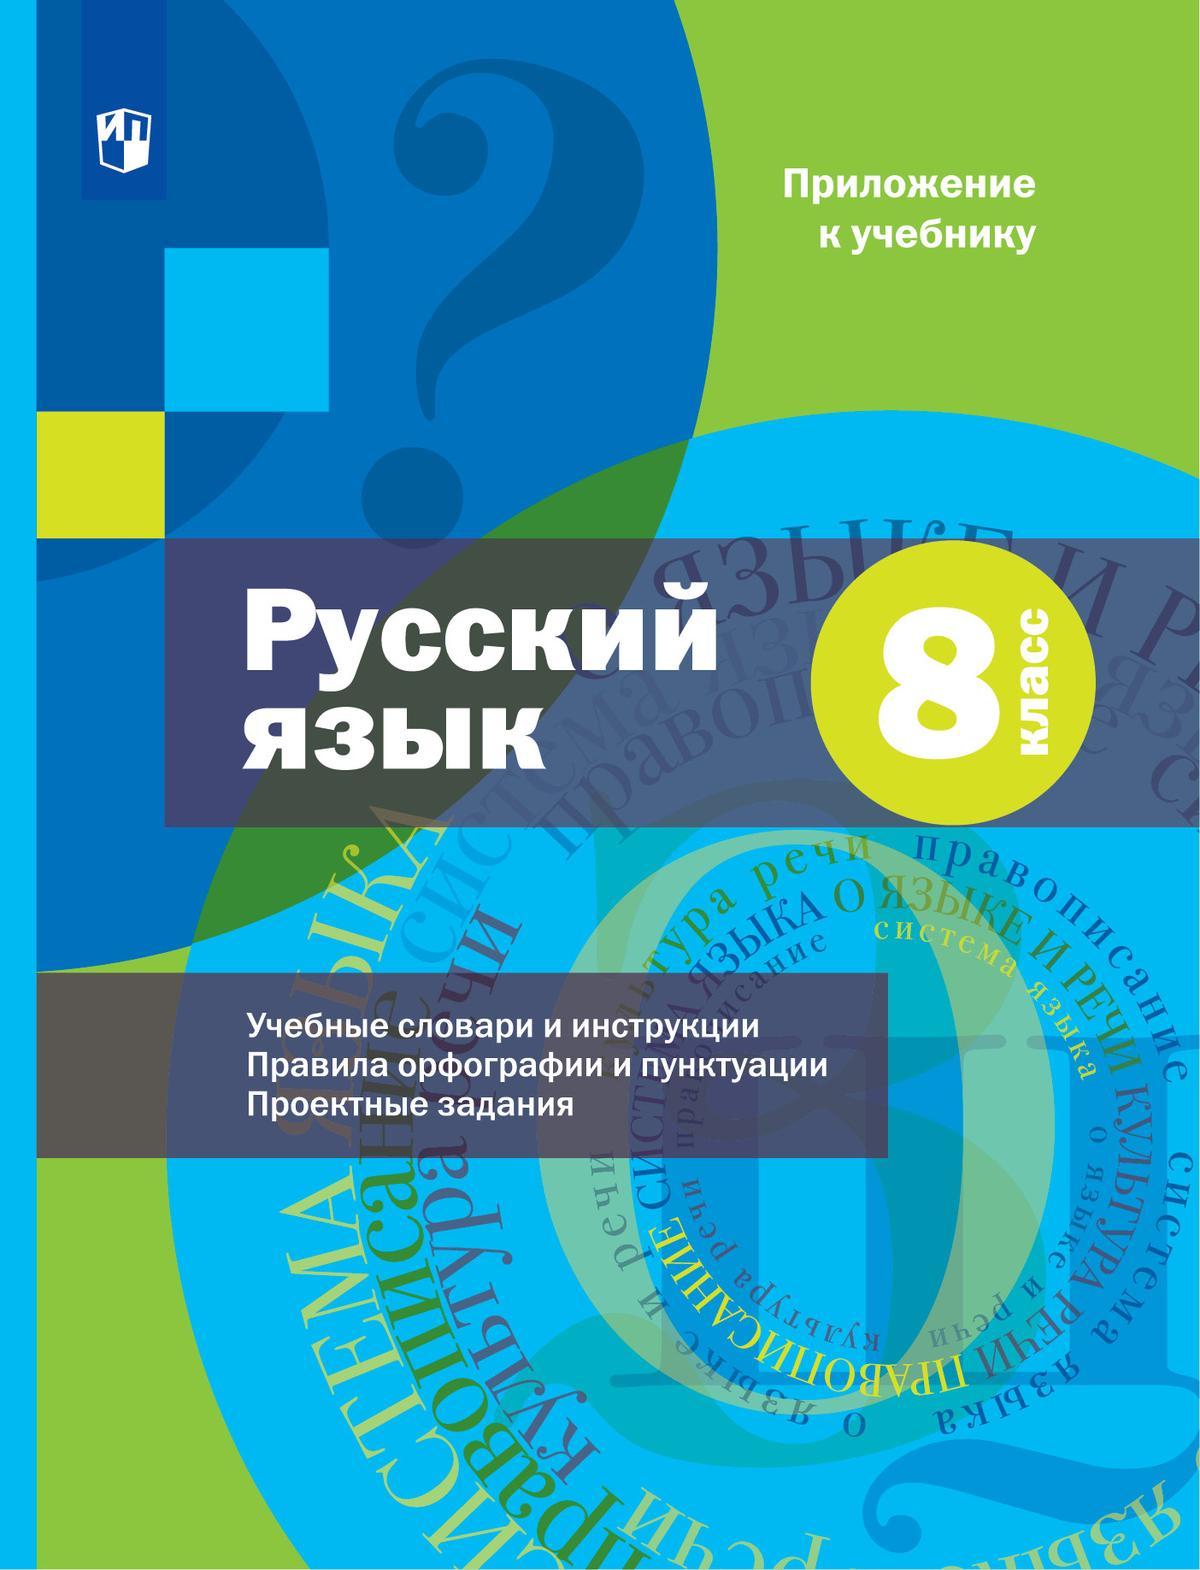 Русский язык. 8 класс. Электронная форма учебника. Комплект (+ приложение) 1